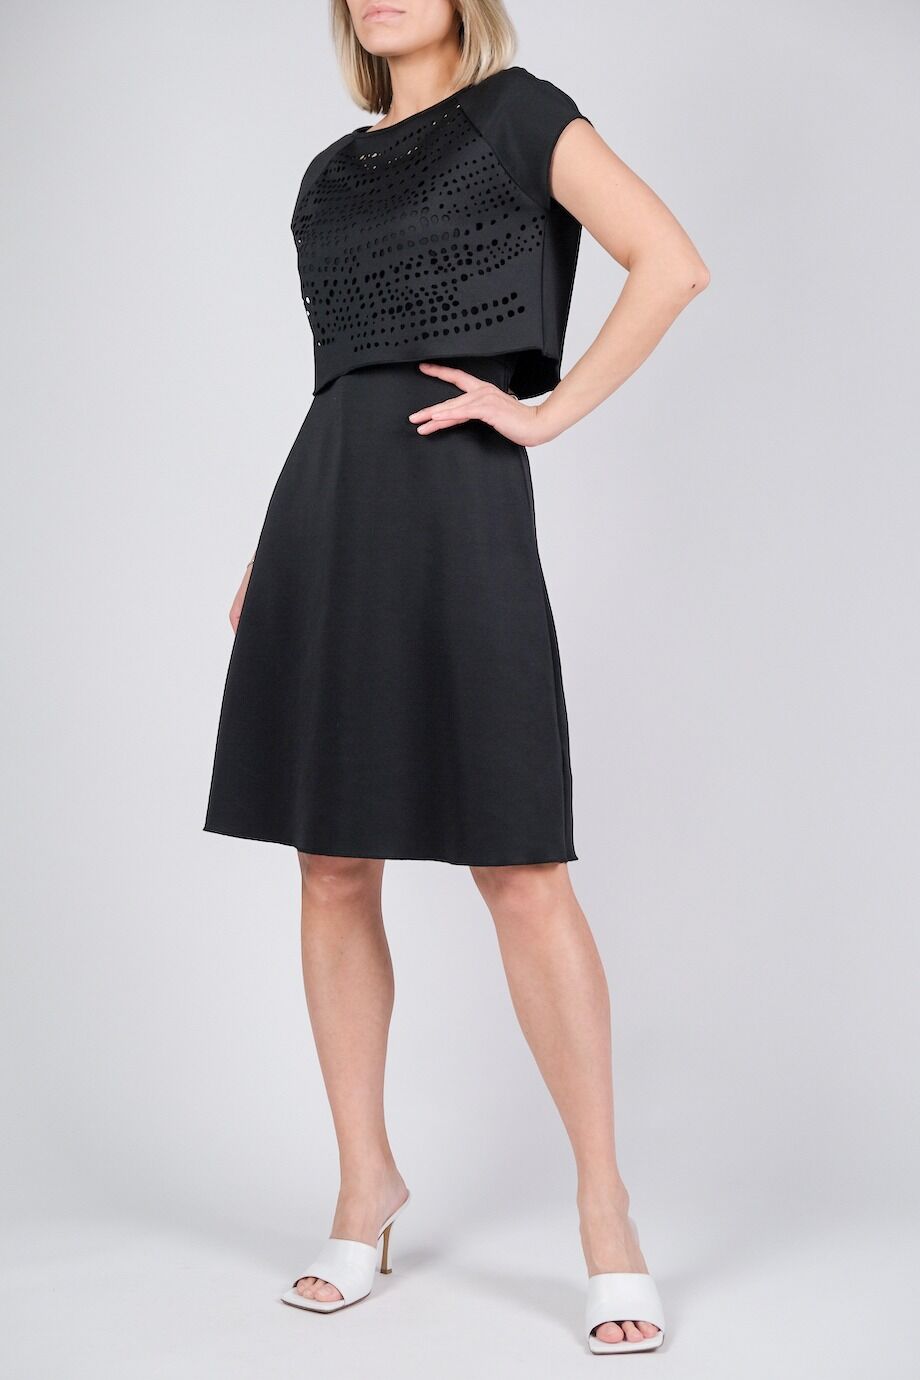 image 2 Платье черного цвета со съемным топом с перфорацией